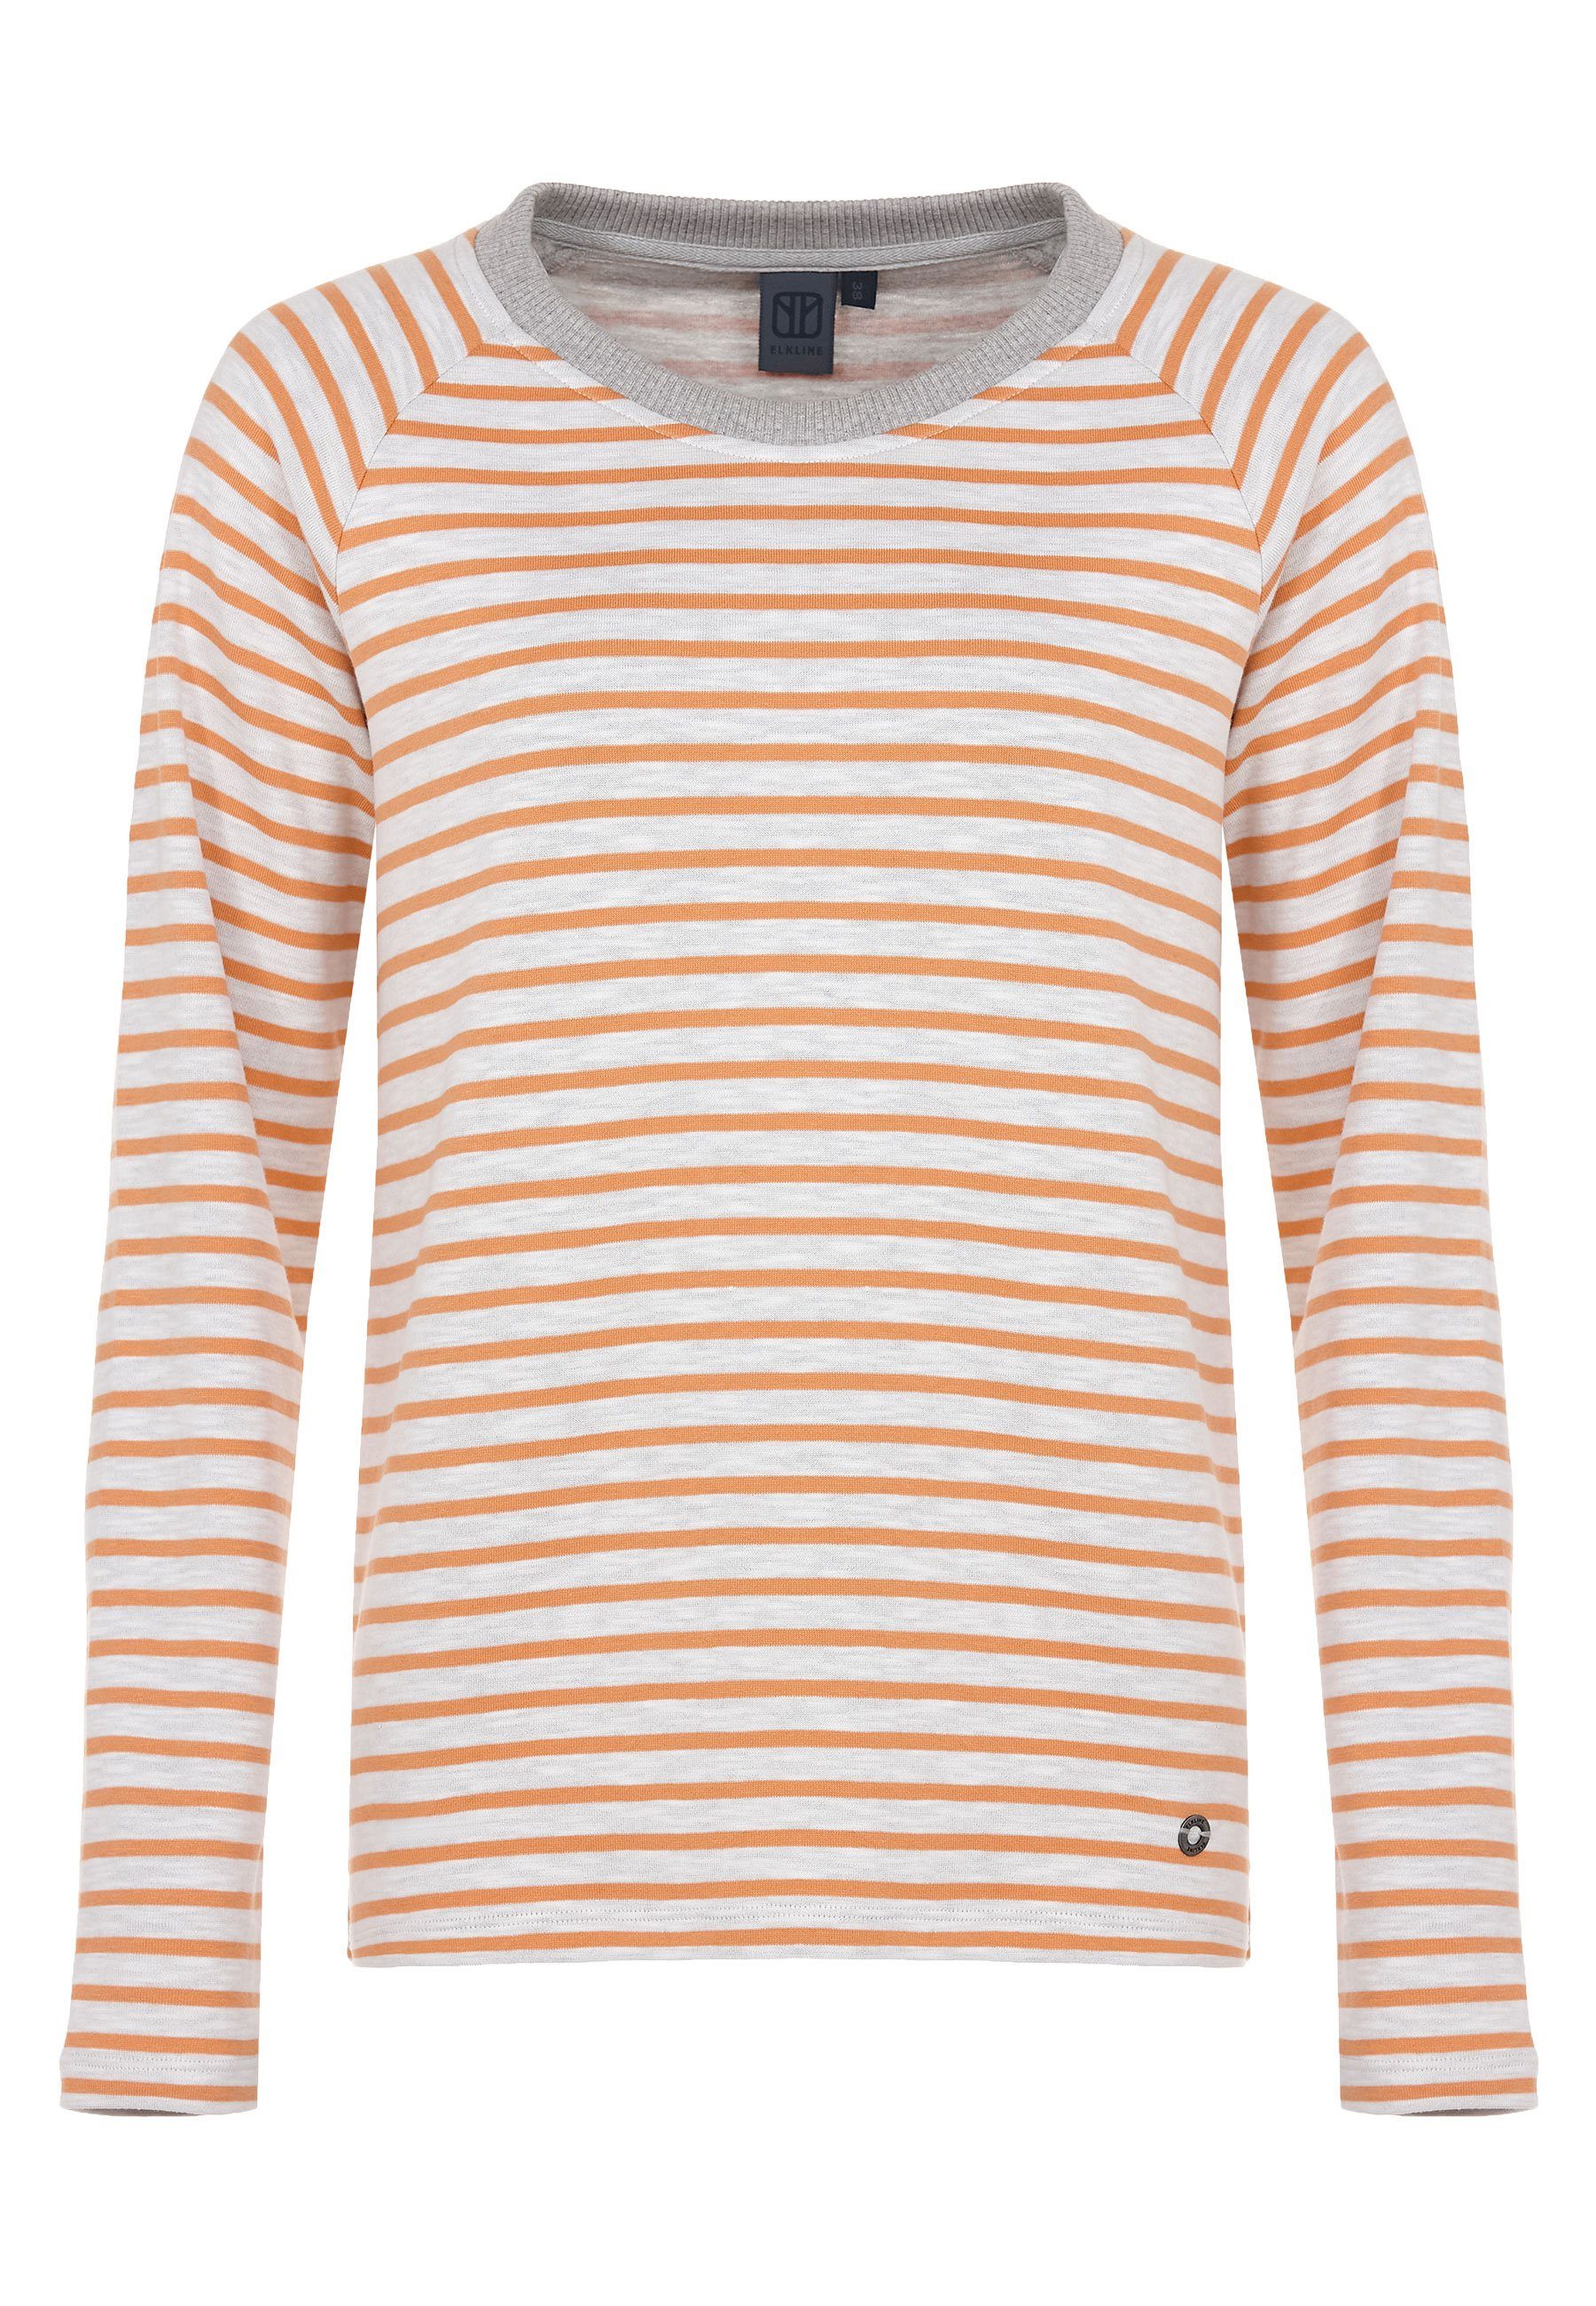 Tomorrow Sweatshirt weiter Elkline soft Halsausschnitt white Streifen orange -